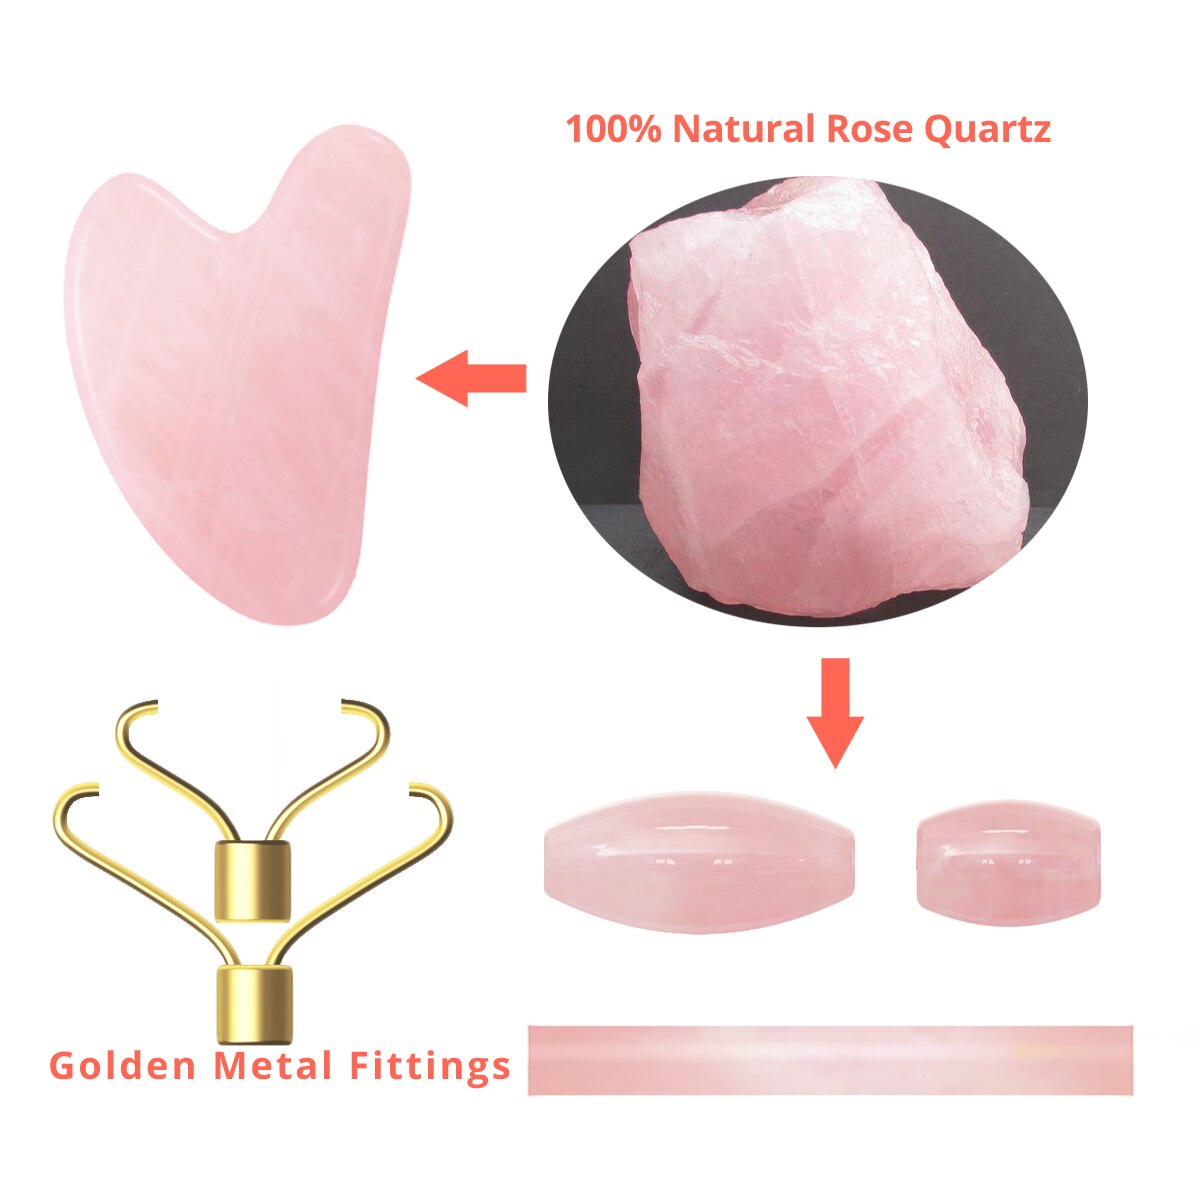 Gua Sha 100% Natural Rose Quartz Face Roller and Scraper